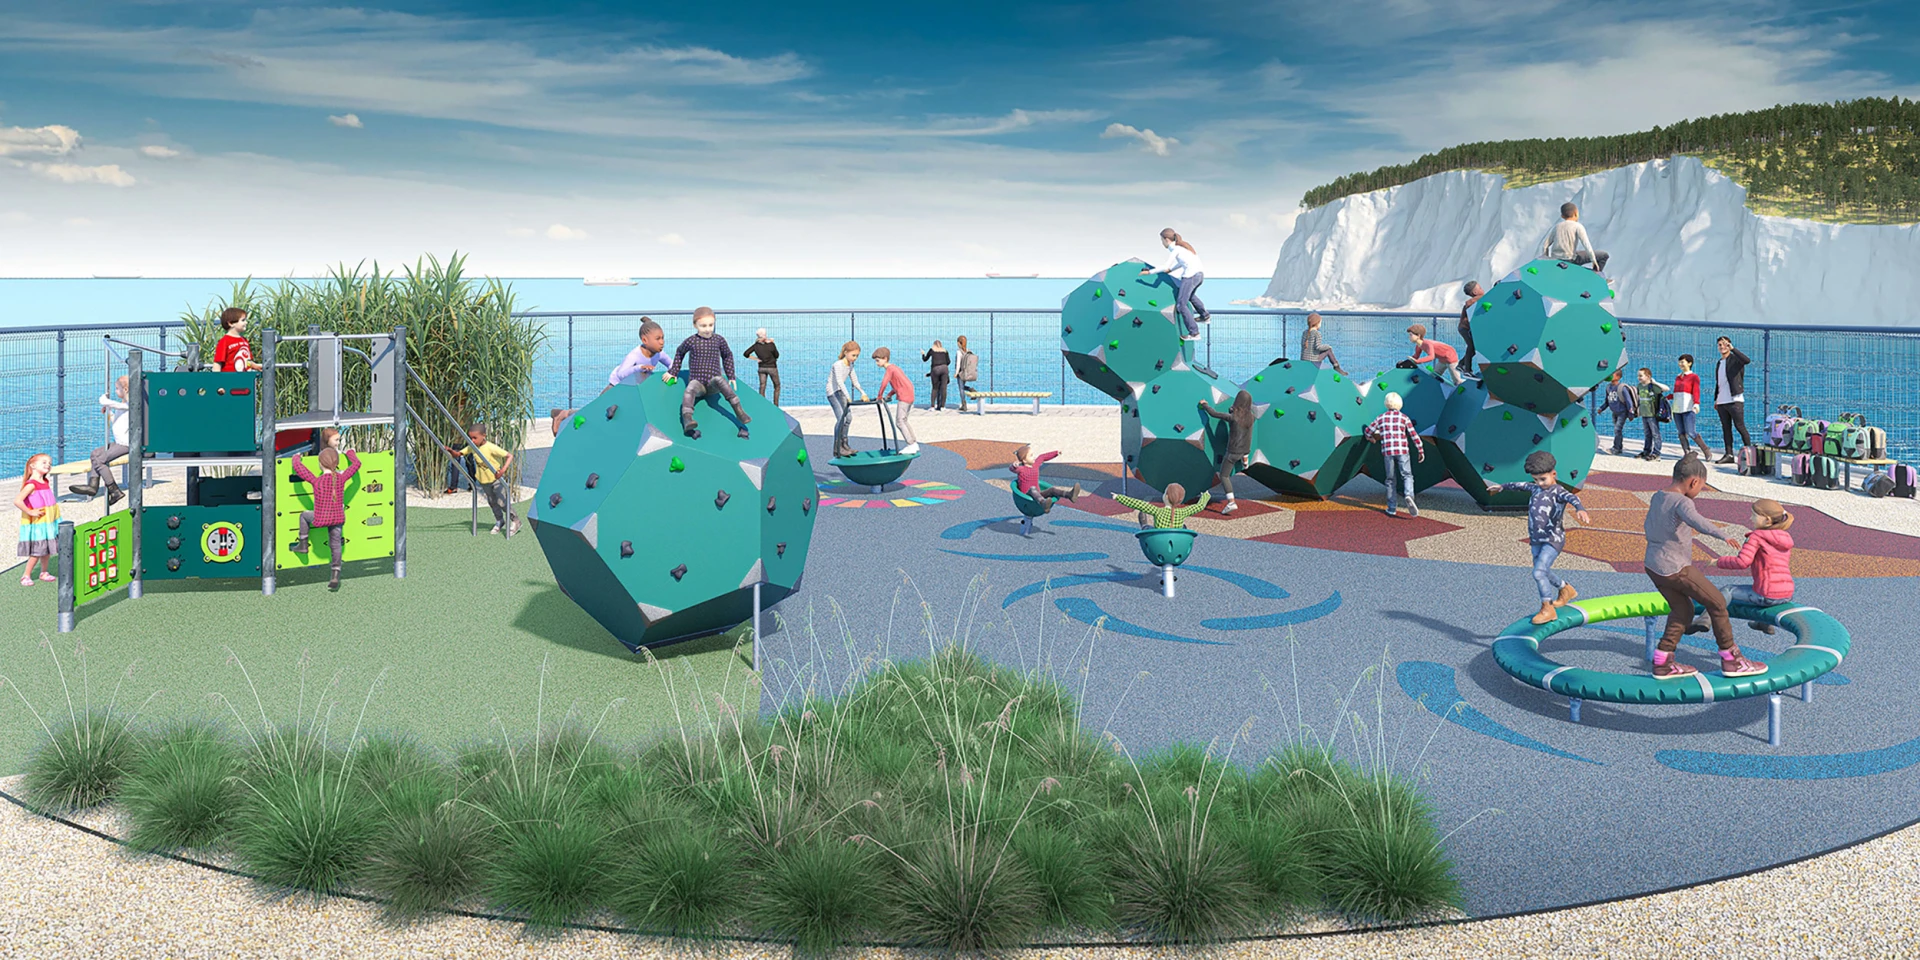 Idée de design pour une aire de jeux pour enfants basse en emission de CO2